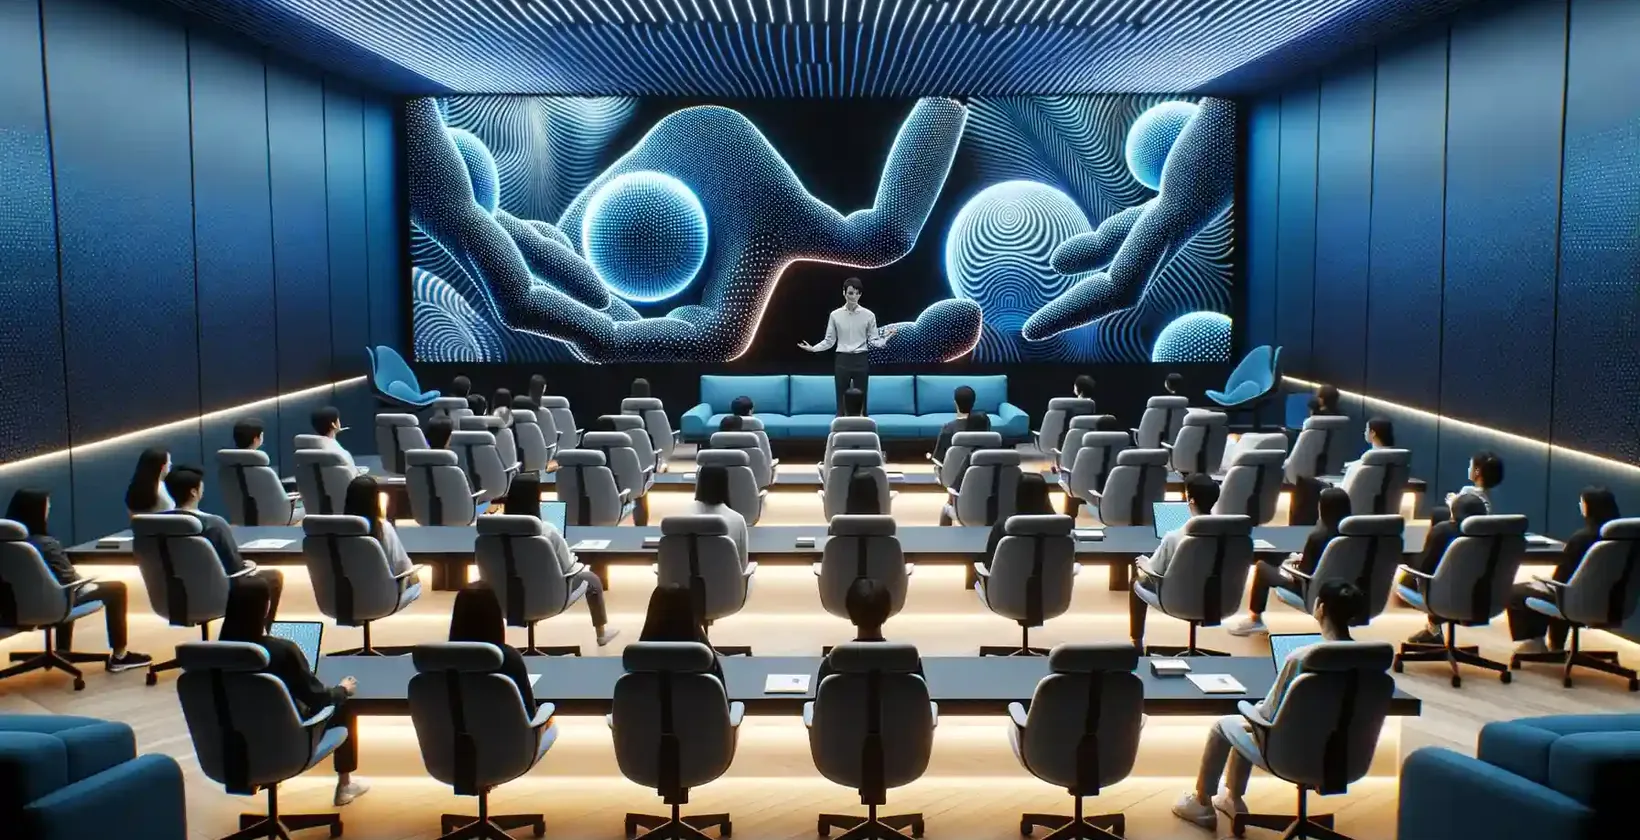 Σύγχρονη αίθουσα διαλέξεων γεμάτη με συμμετέχοντες που κάθονται σε βελούδινες καρέκλες, ο καθένας εξοπλισμένος με ατομικούς σταθμούς εργασίας